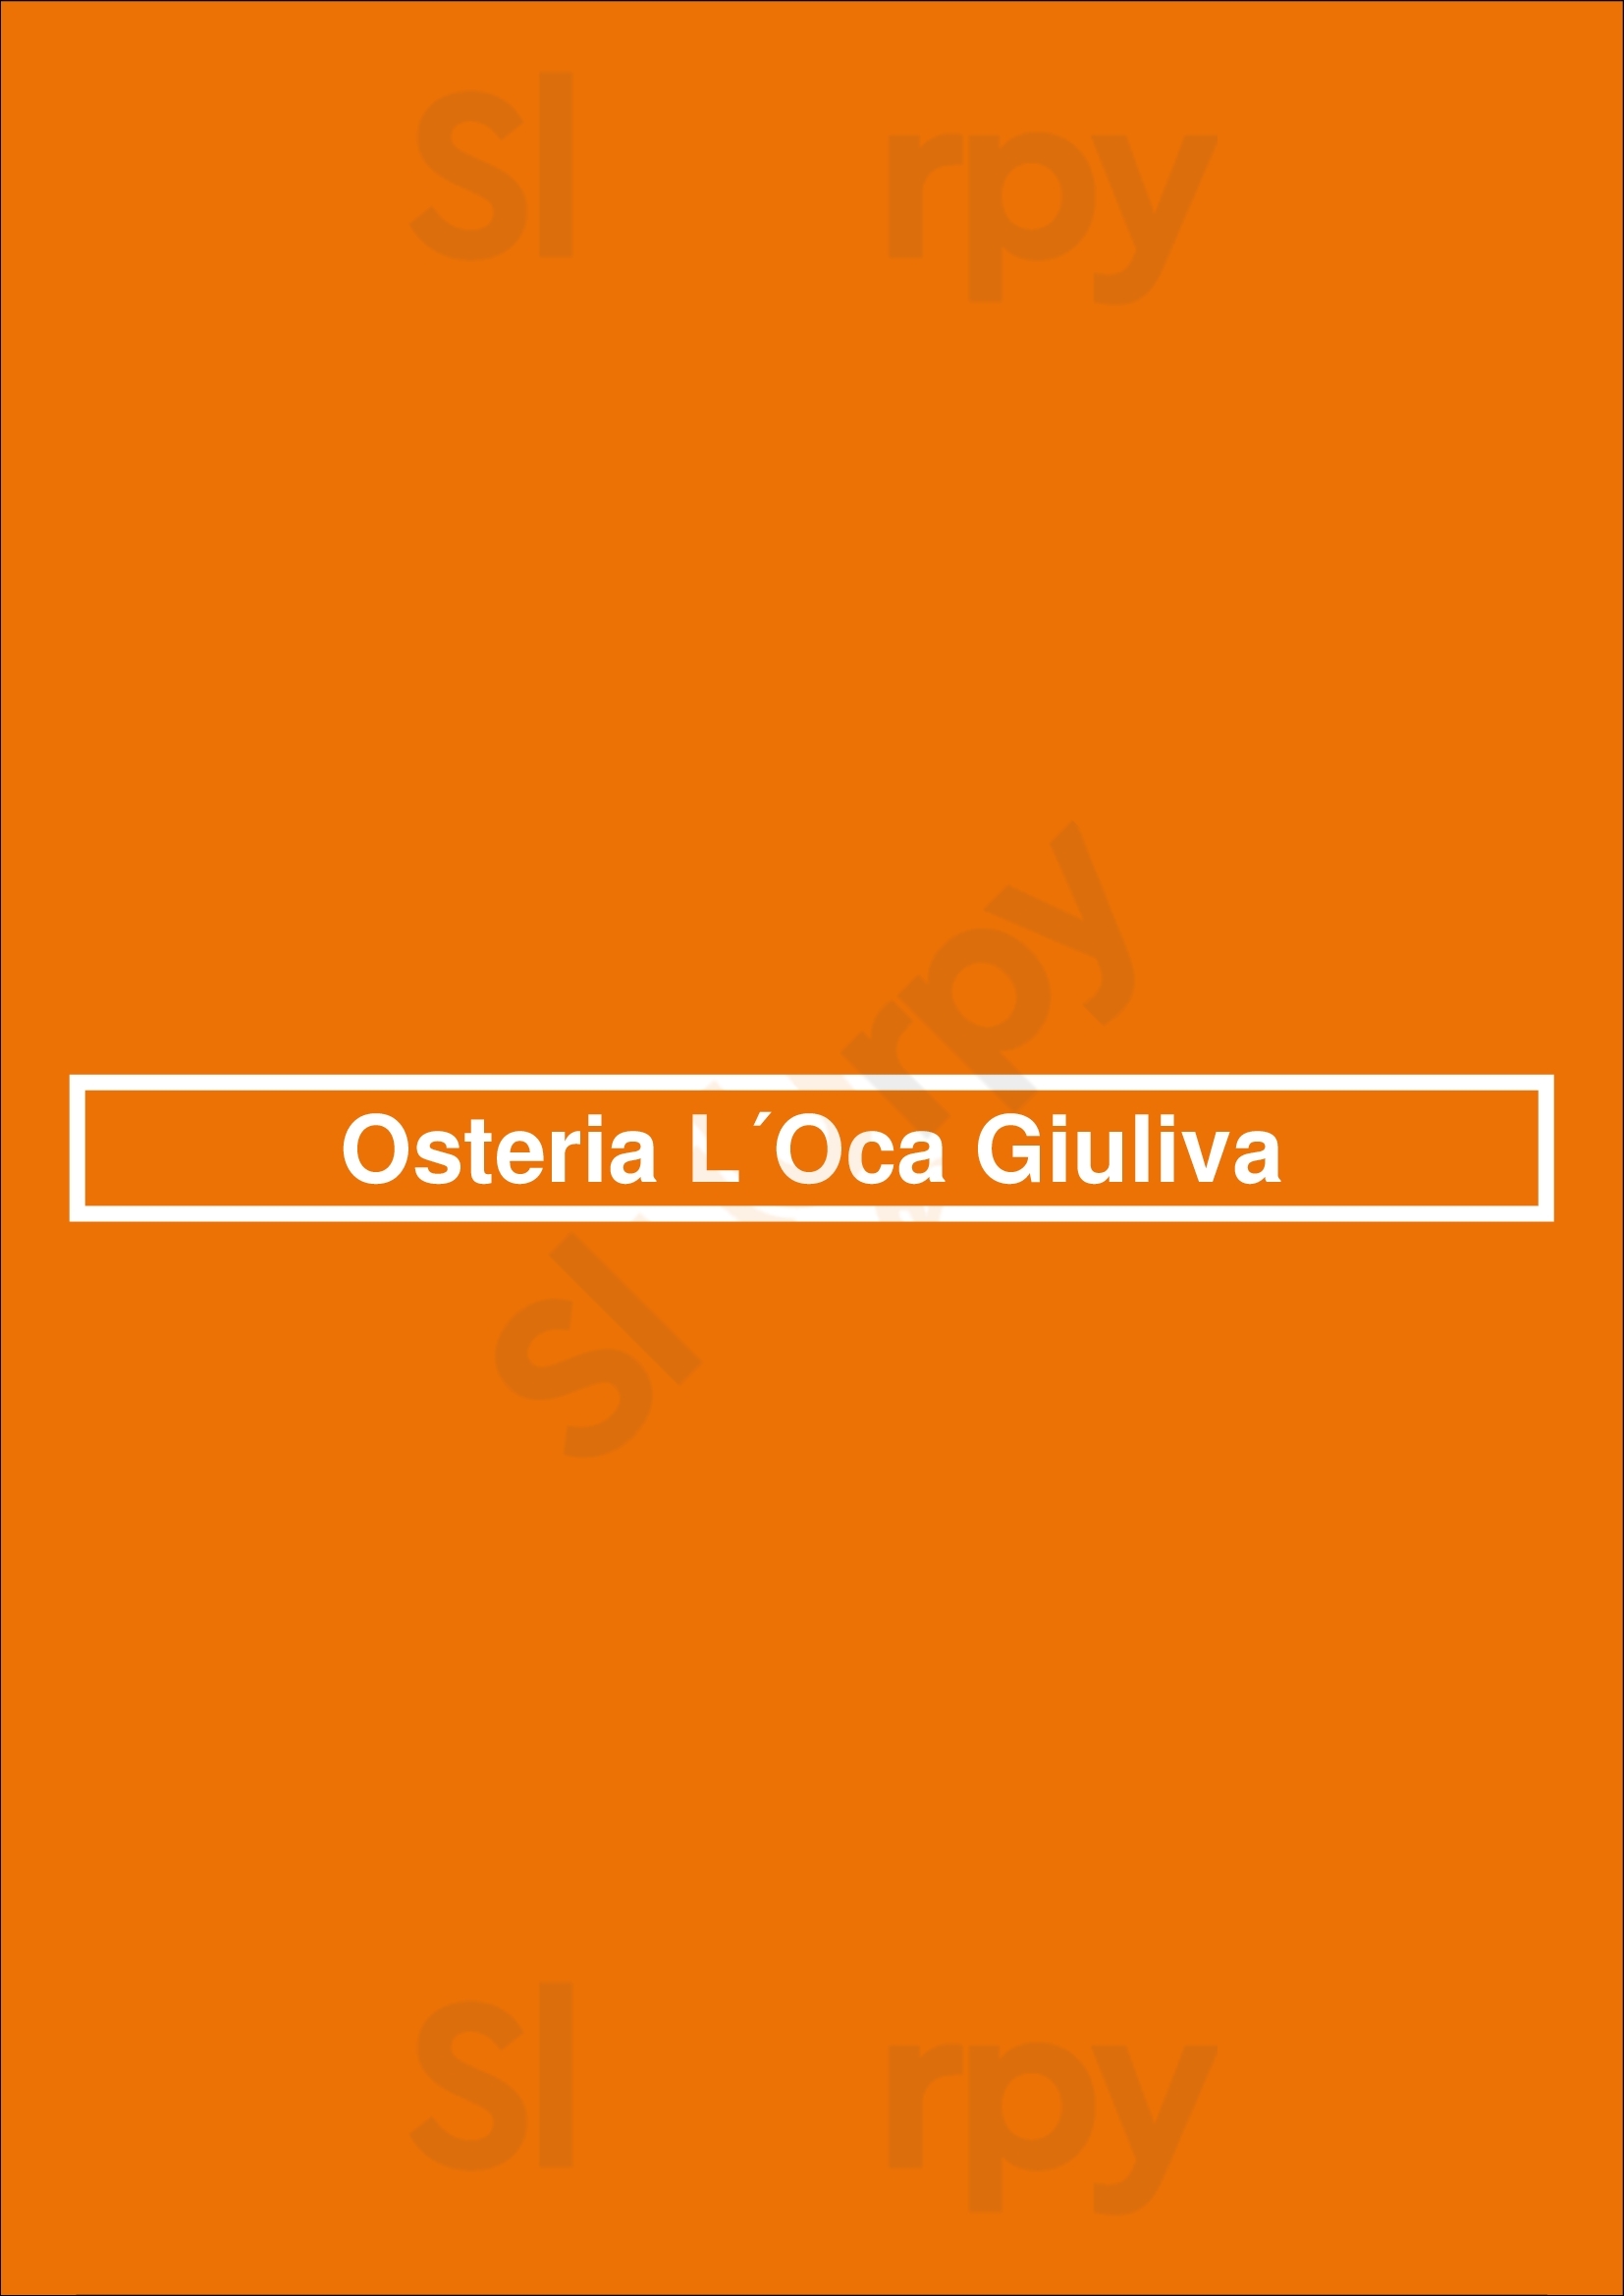 Osteria L´oca Giuliva Sevilla Menu - 1